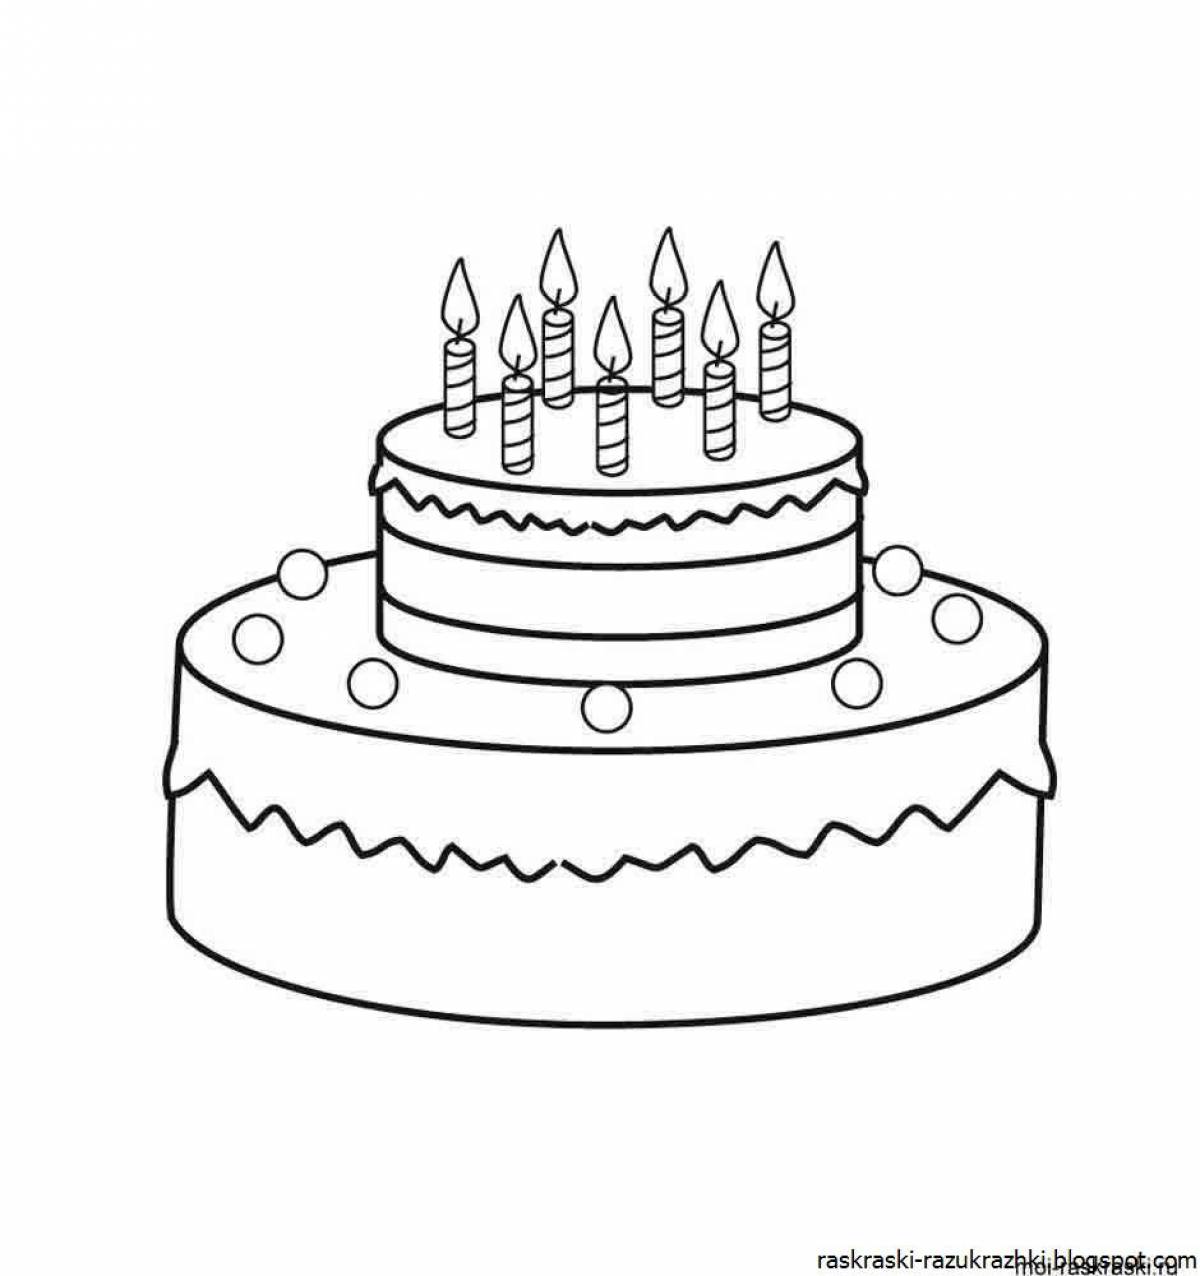 Рисунок торта на день рождения для детей простой